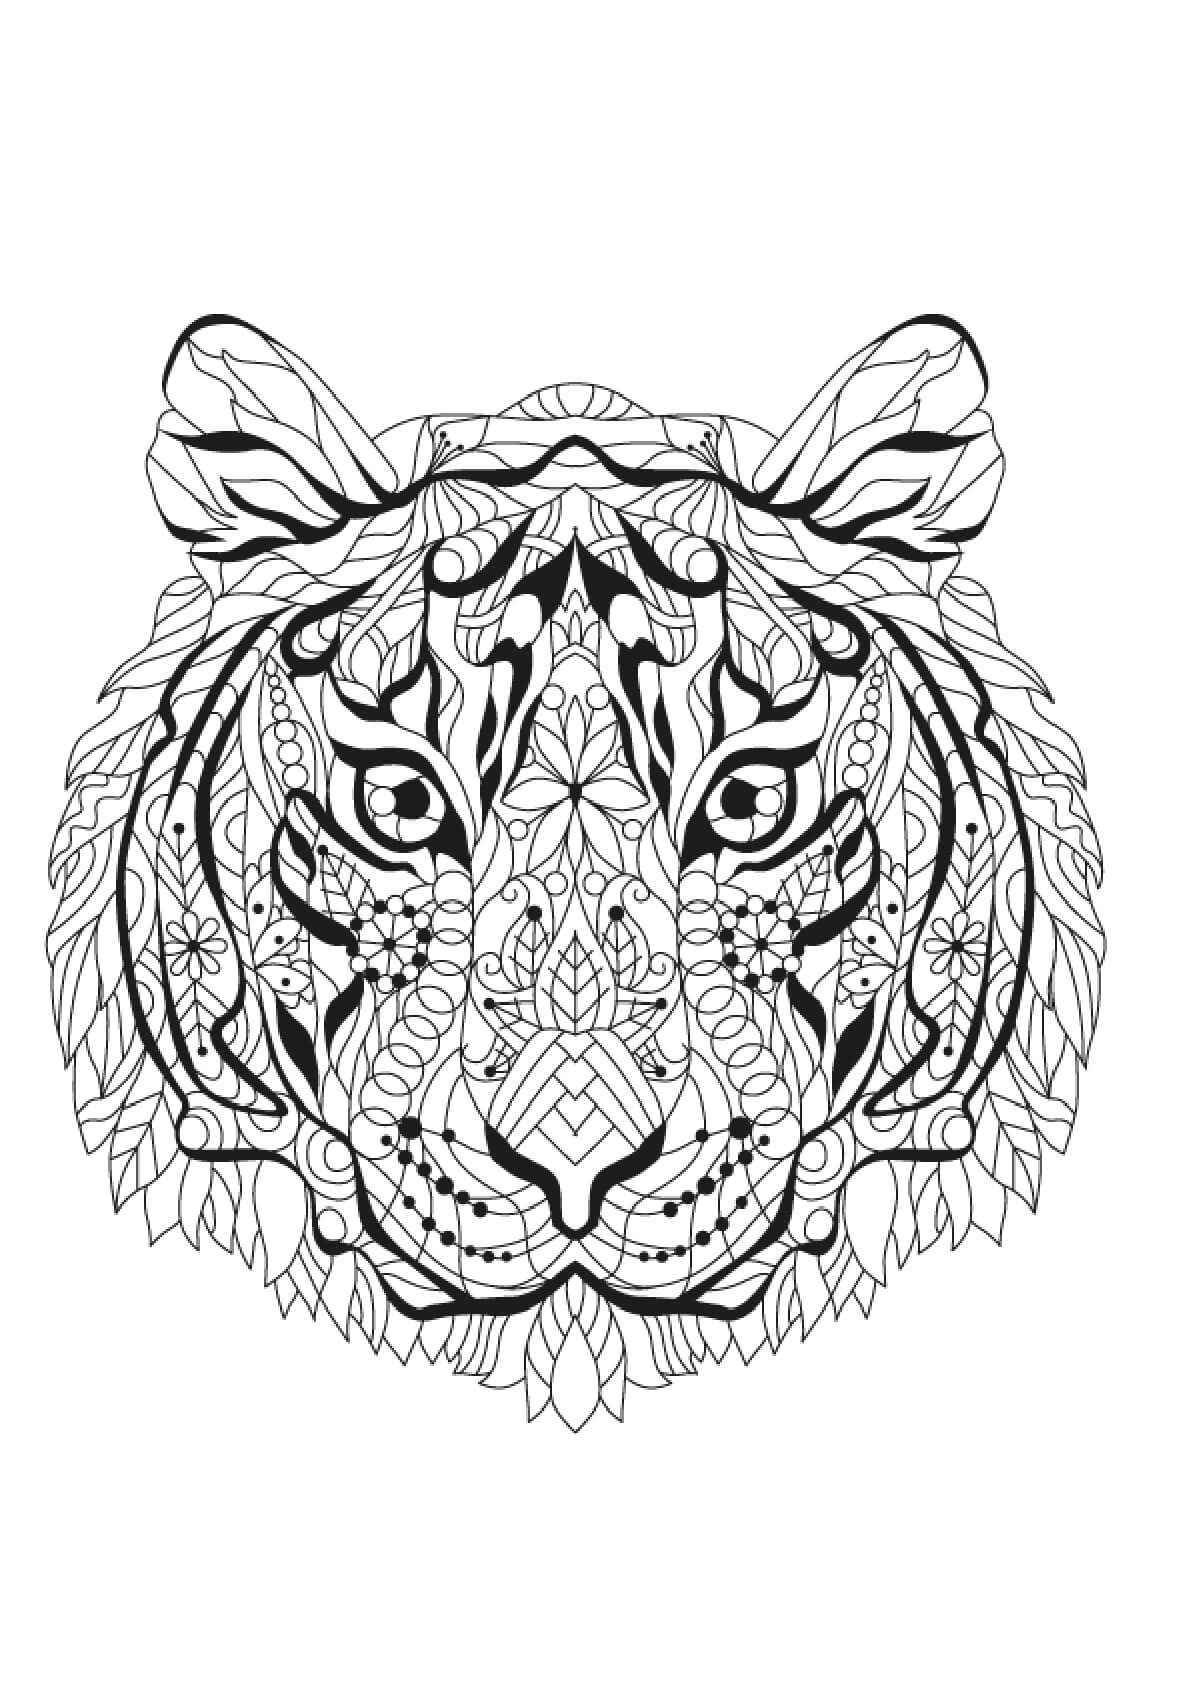 Mandala Tiger Coloring Page - Sheet 3 Mandalas